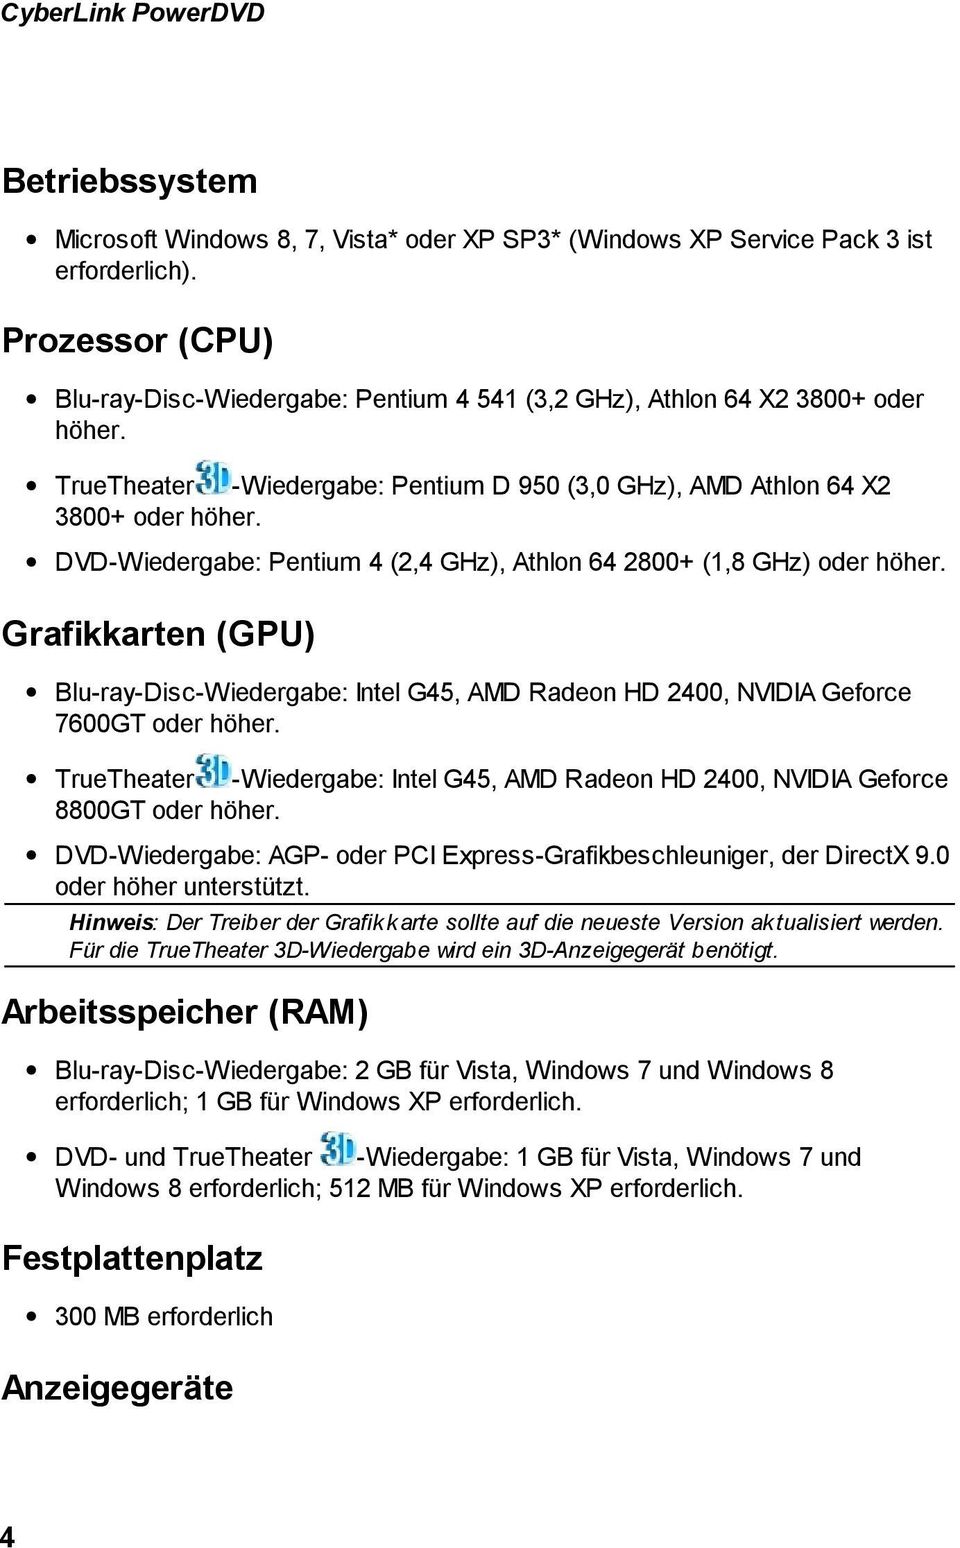 DVD-Wiedergabe: Pentium 4 (2,4 GHz), Athlon 64 2800+ (1,8 GHz) oder höher. Grafikkarten (GPU) Blu-ray-Disc-Wiedergabe: Intel G45, AMD Radeon HD 2400, NVIDIA Geforce 7600GT oder höher.